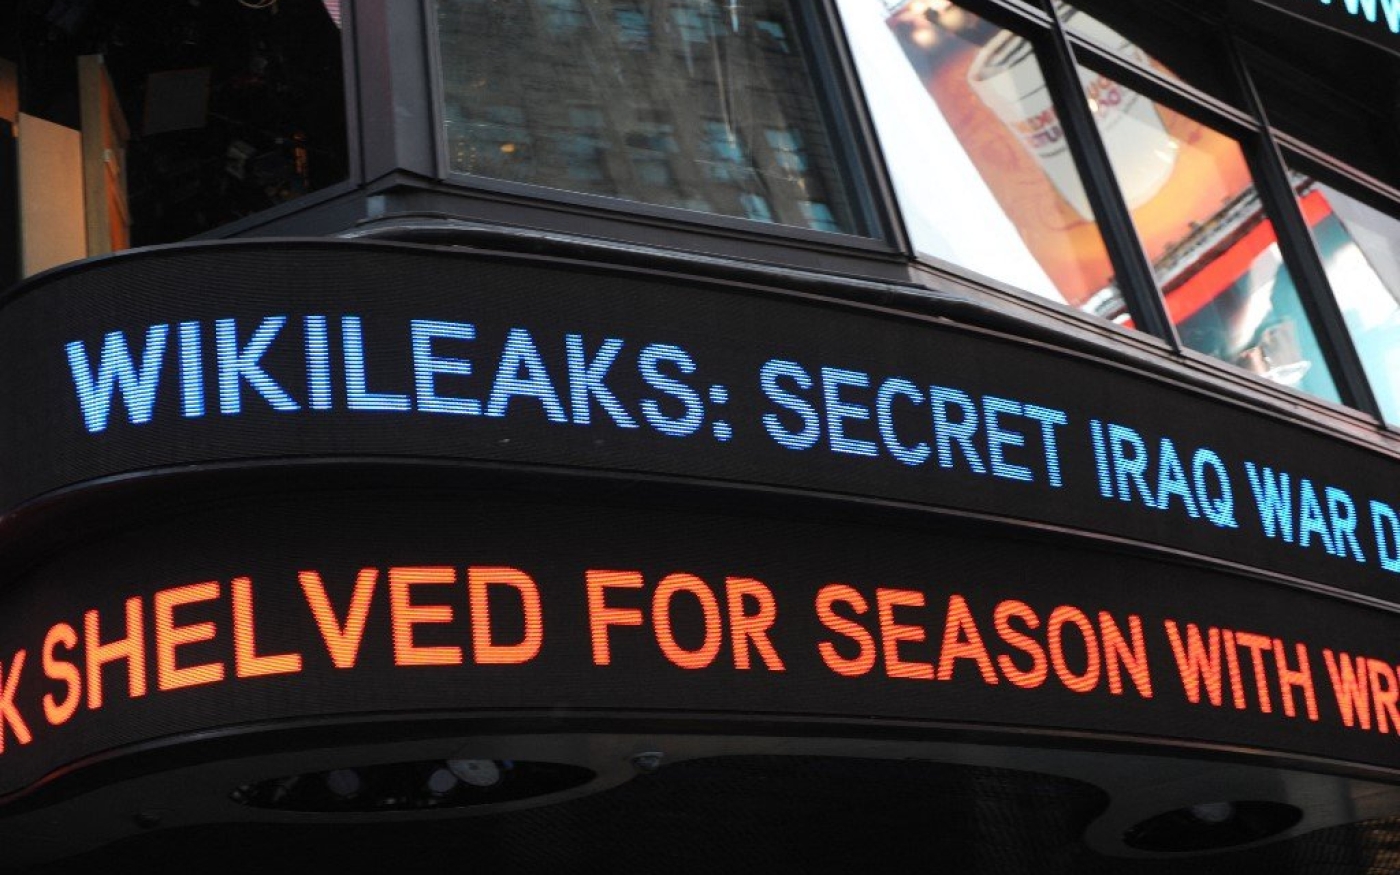 Un bandeau annonce la publication de 400 000 documents américains secrets sur la guerre en Irak sur le site WikiLeaks, le 22 octobre 2010, à Times Square à New York (AFP/Stan Honda)